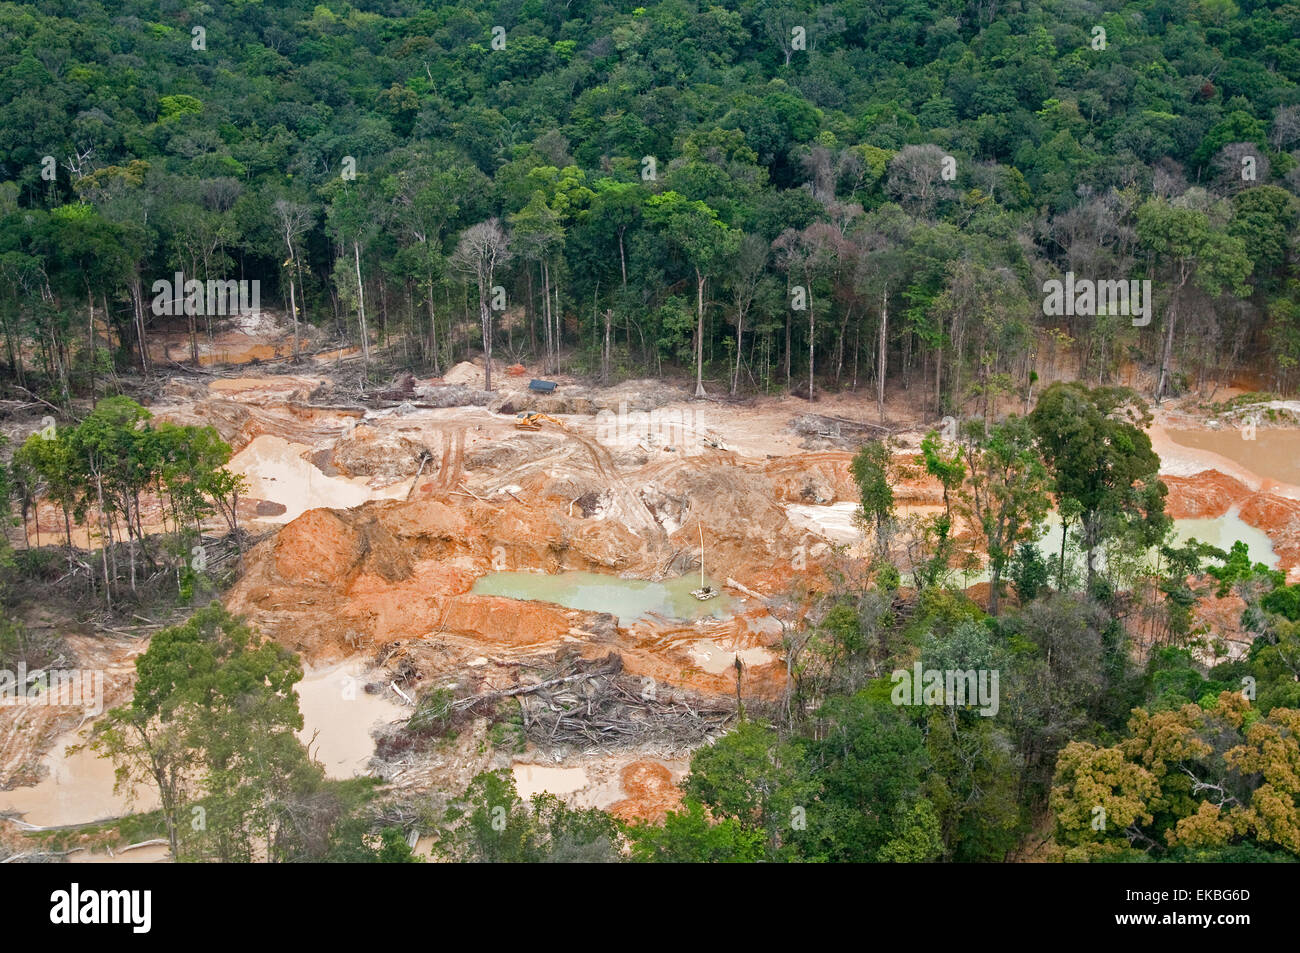 La distruzione della foresta pluviale causato da miniere d'oro, Guyana, Sud America Foto Stock